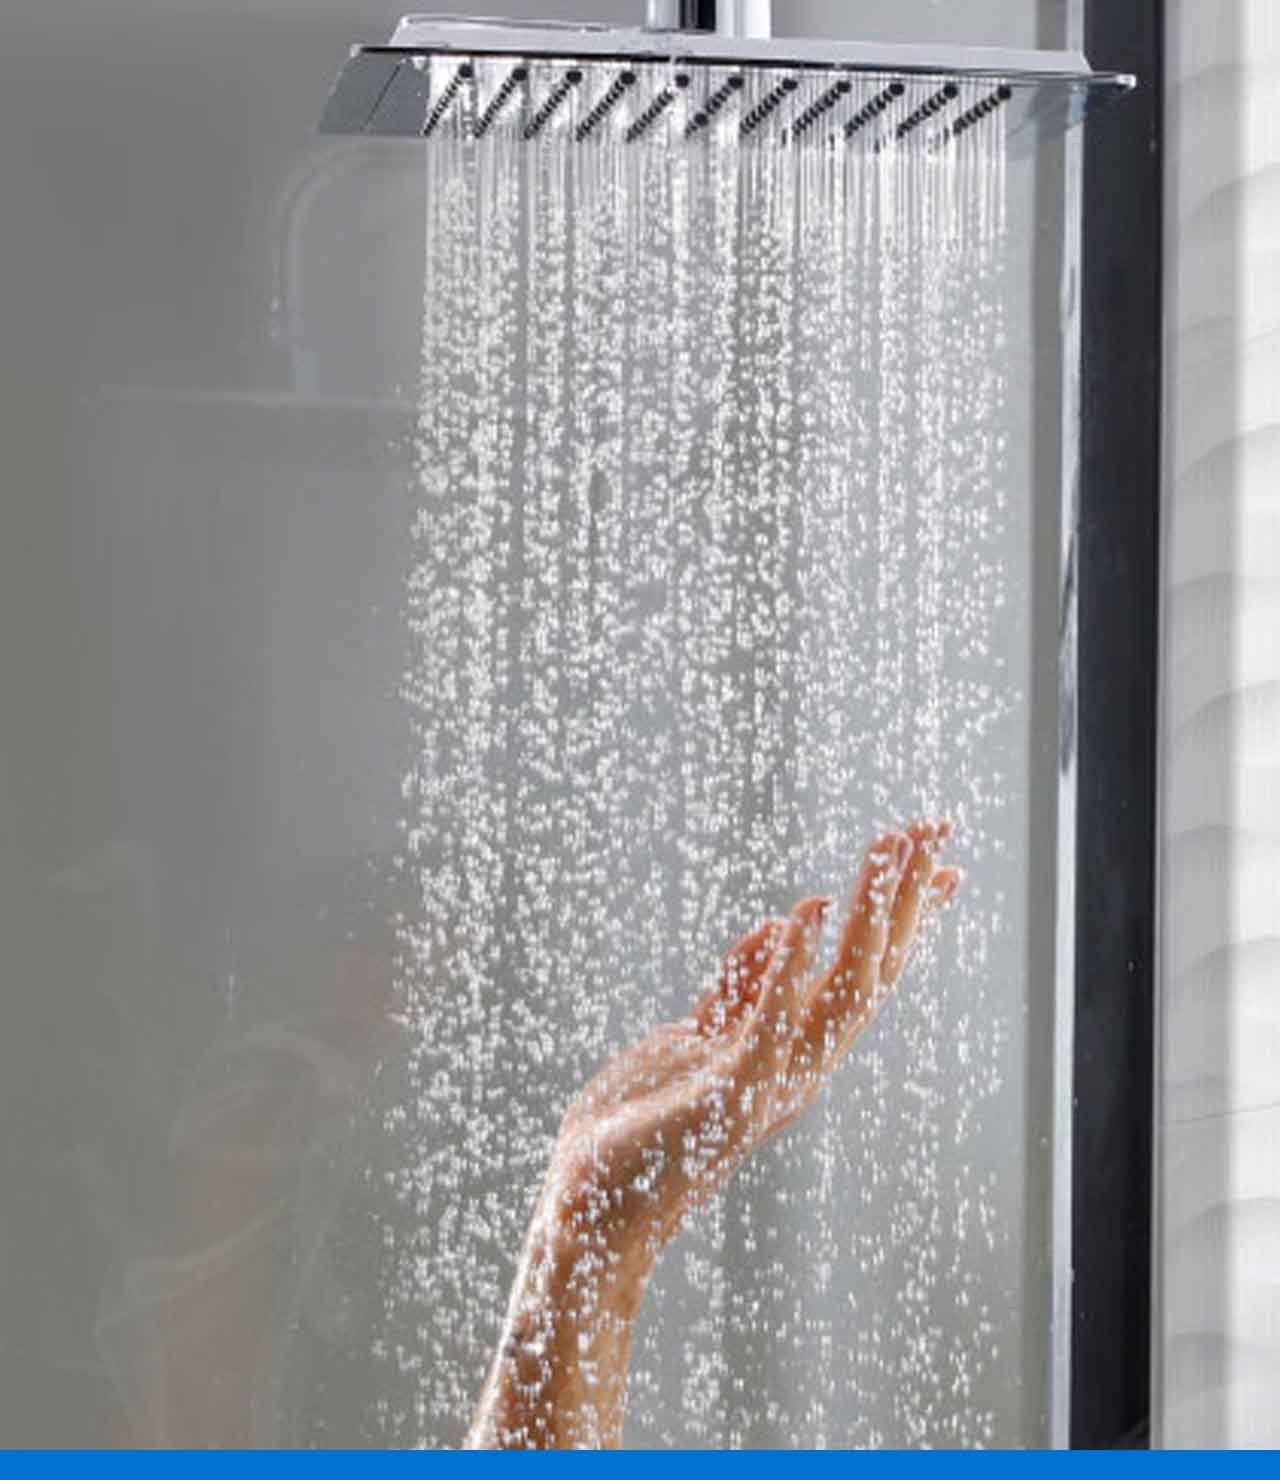 Calentadores y duchas - Baños - Productos